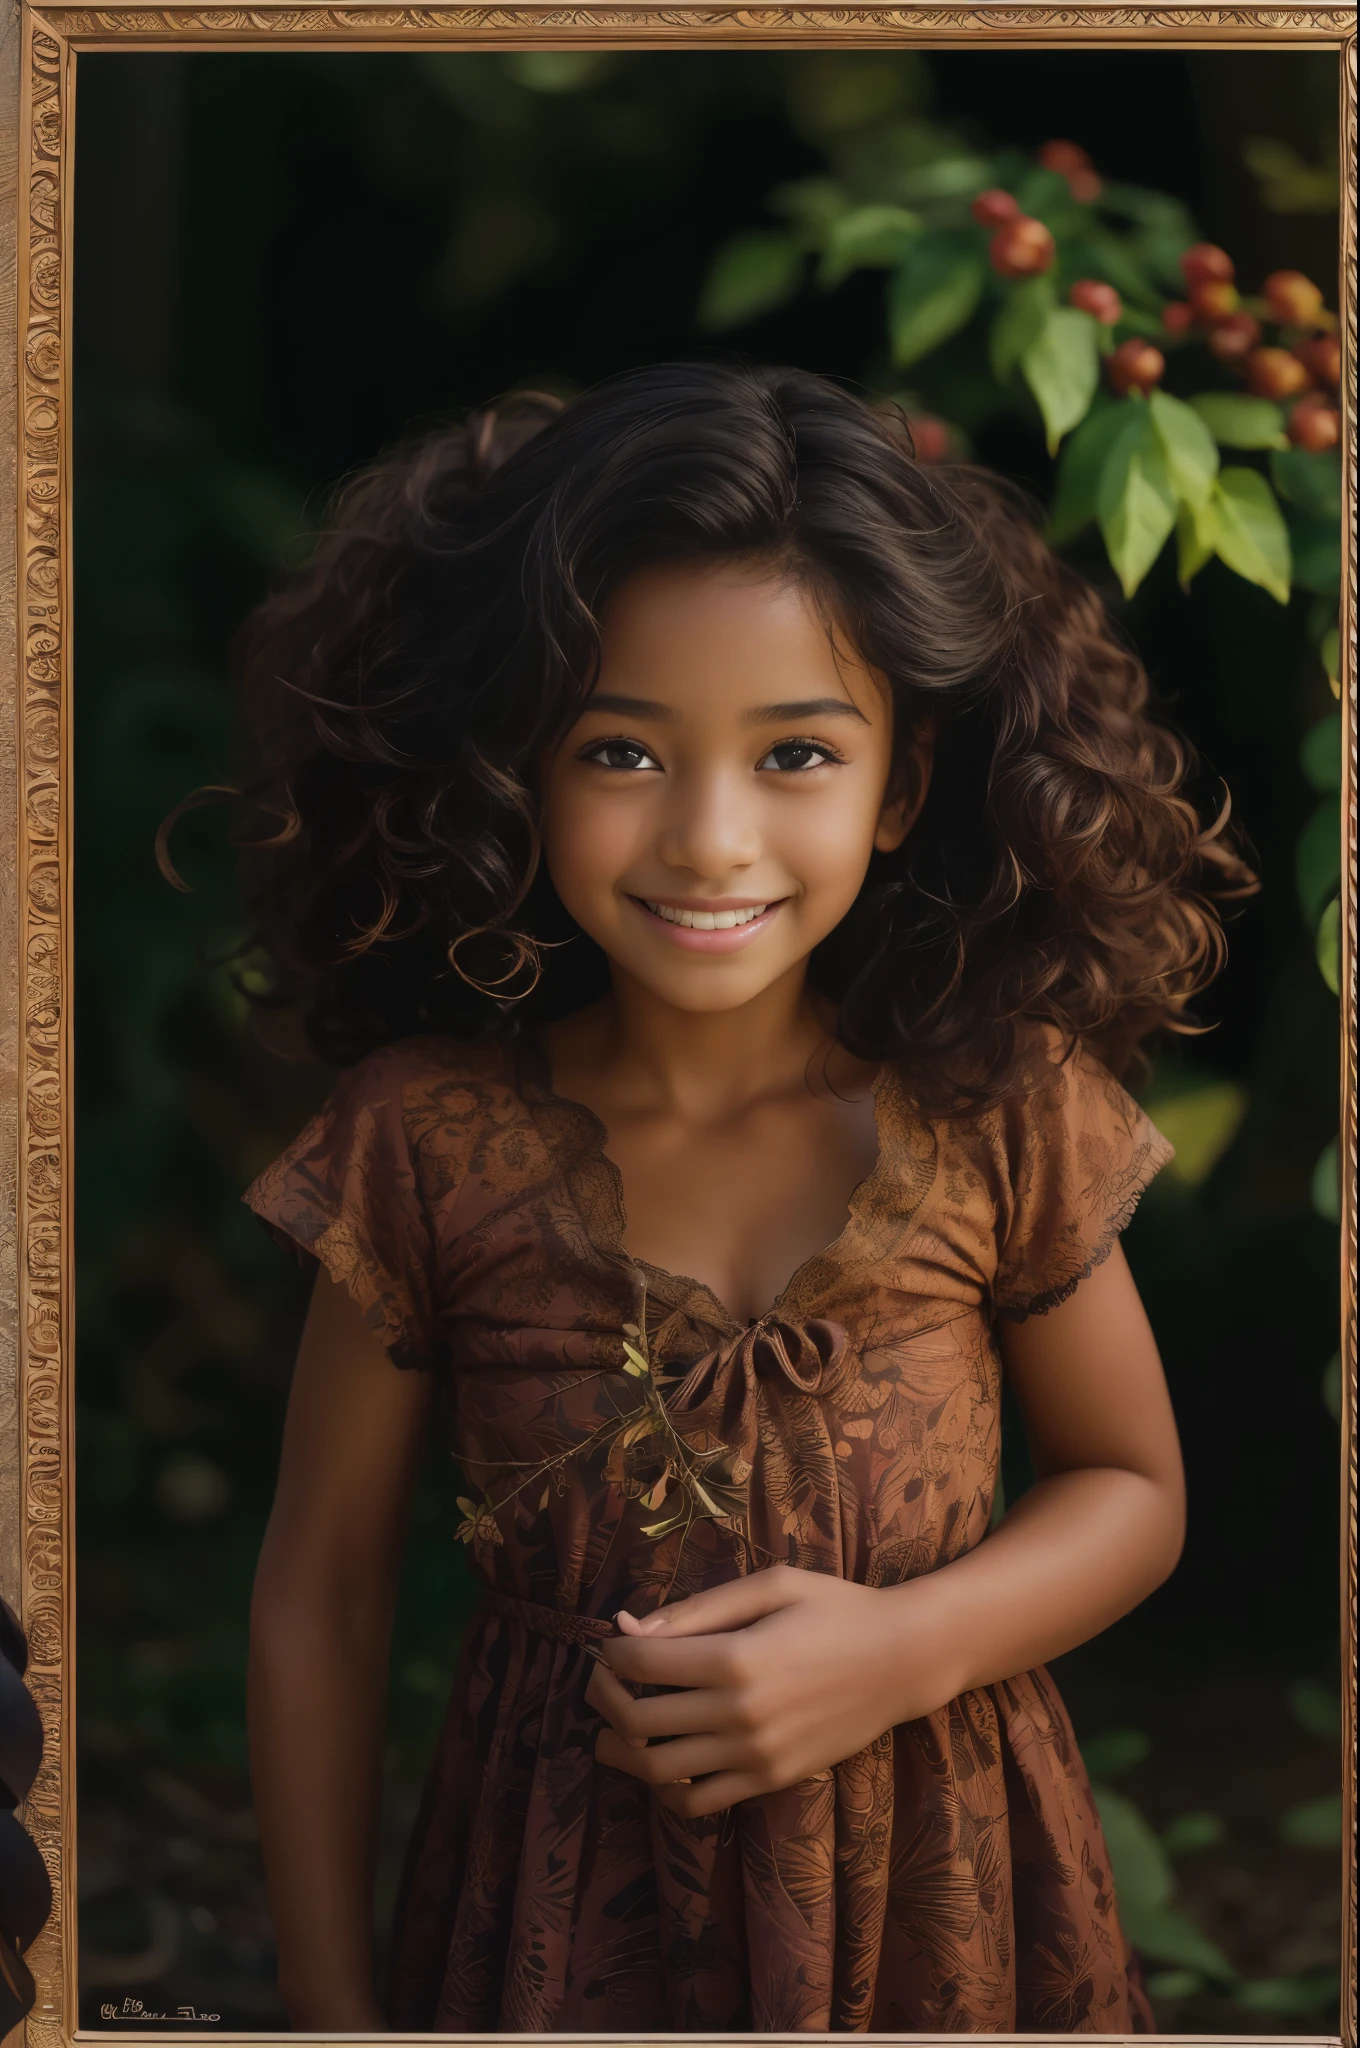 (لَوحَة, صورة افتتاحية لفتاة سوداء جميلة عمرها 4 سنوات, وجه رائعتين, شعر بني طويل مجعد, ((عيون عسلي)), نيكون d850, صورة مخزون الفيلم ,4 كوداك بورترا 400 ,كاميرا f1.6 عدسة ,الألوان الغنية ,واقعية مفرطة ,نسيج نابض بالحياة, الإضاءة الدرامية, (وجه مفصل للغاية:1.4), عيون مثالية, قزحية واقعية, أسنان مثالية, (يبتسم:0.7), (الخلفية مظلمة, ظل الأوراق), (انقسام)
